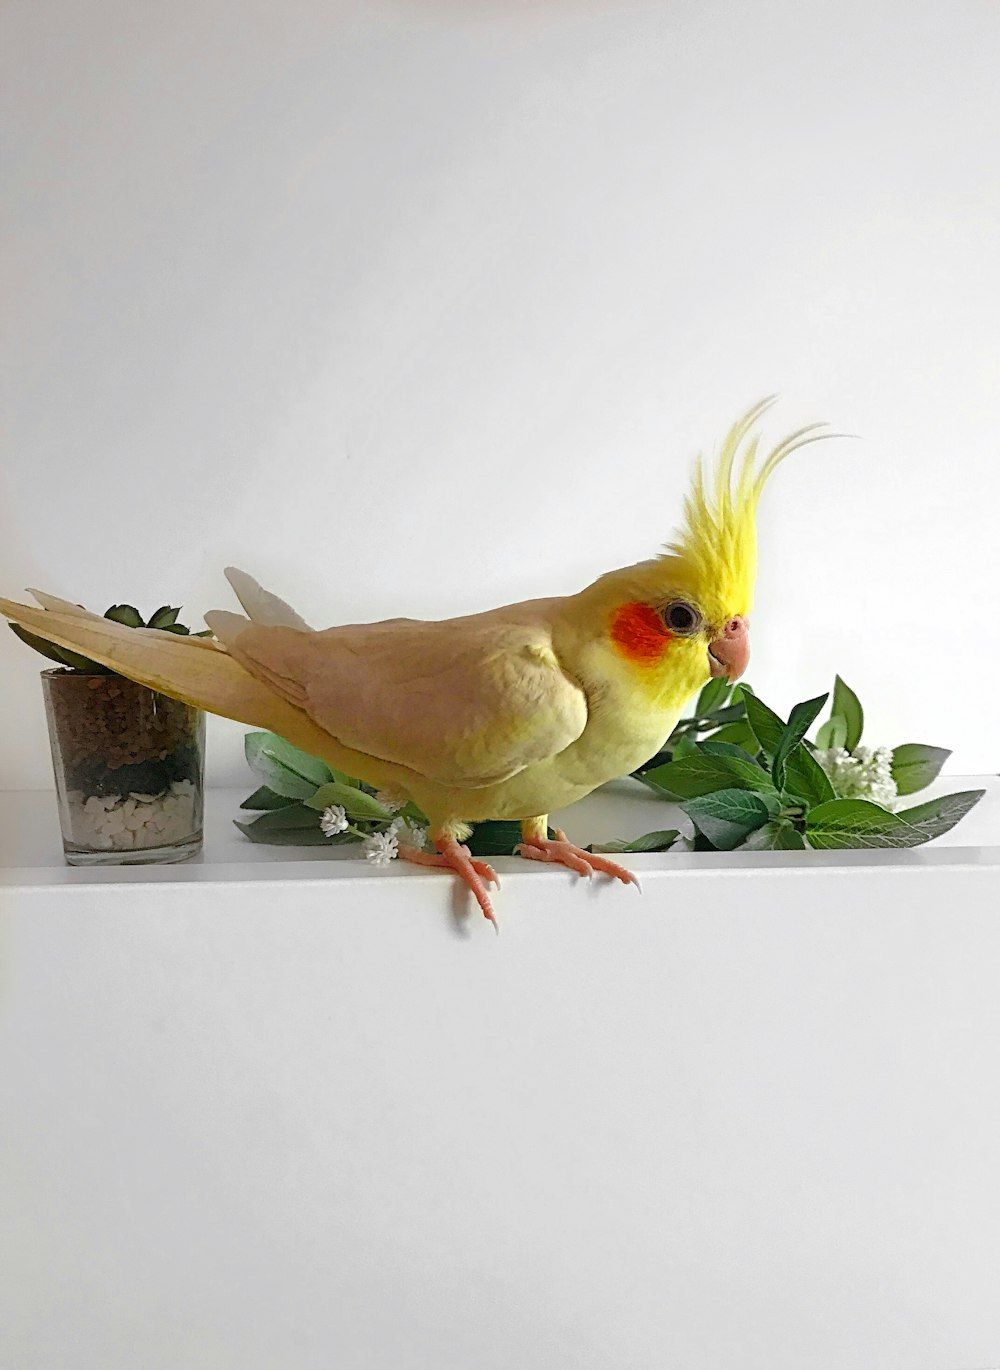  Papagei Hintergrundbild 1000x1370. Foto zum Thema Gelber Vogel auf braunem Holztopf